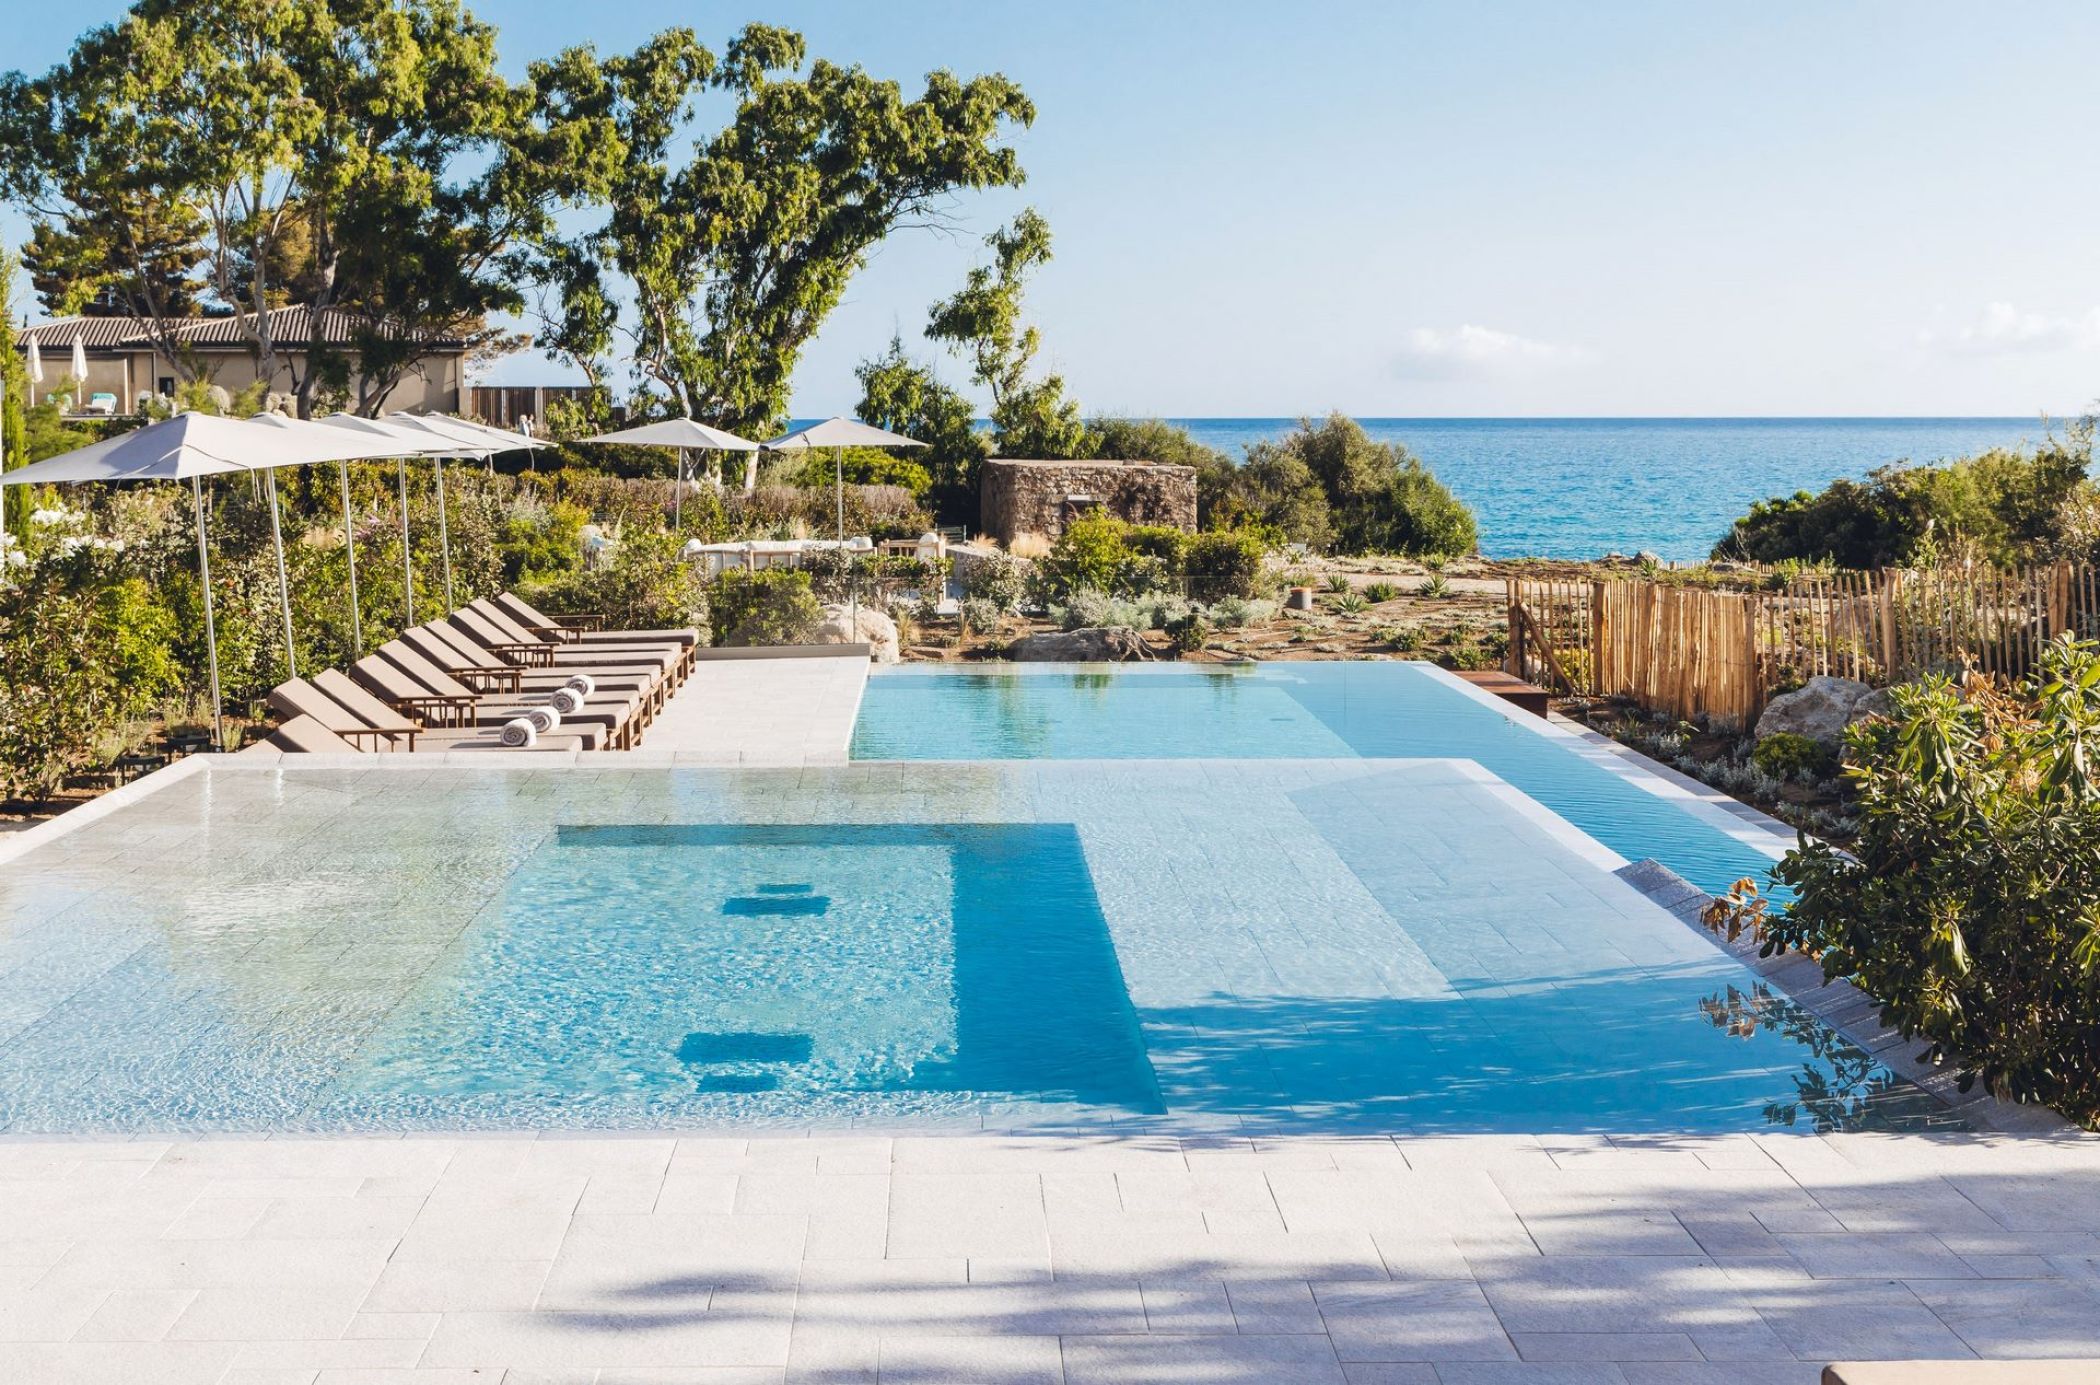 La piscine de l'hôtel 5 étoiles en Corse à Ile Rousse